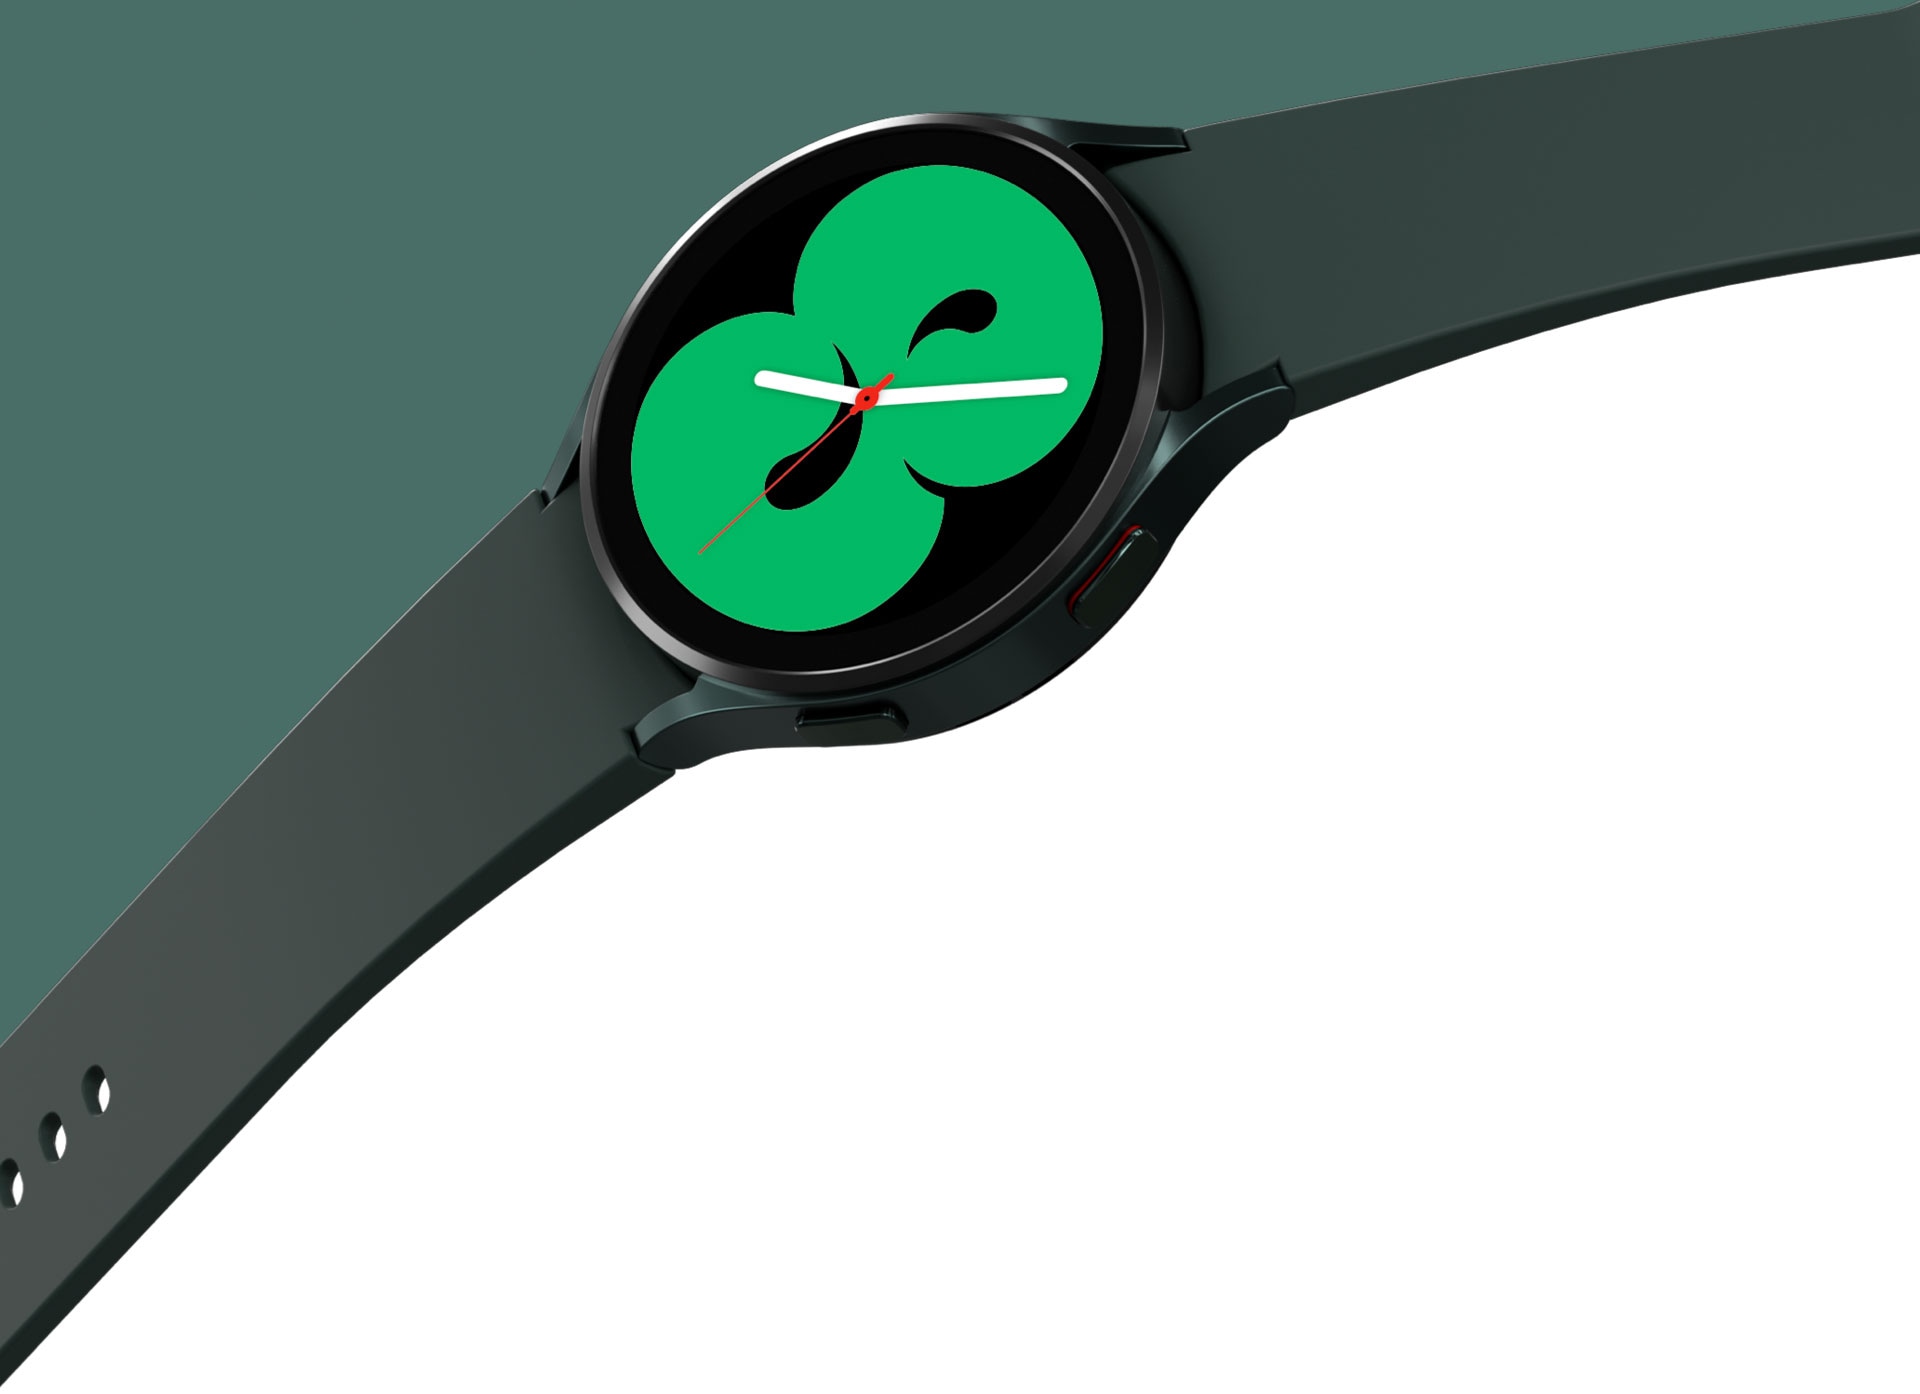 Un Galaxy Watch4 verde se muestra con una banda que se extiende. La pantalla del reloj muestra uno de los diseños que muestra la hora en color verde.